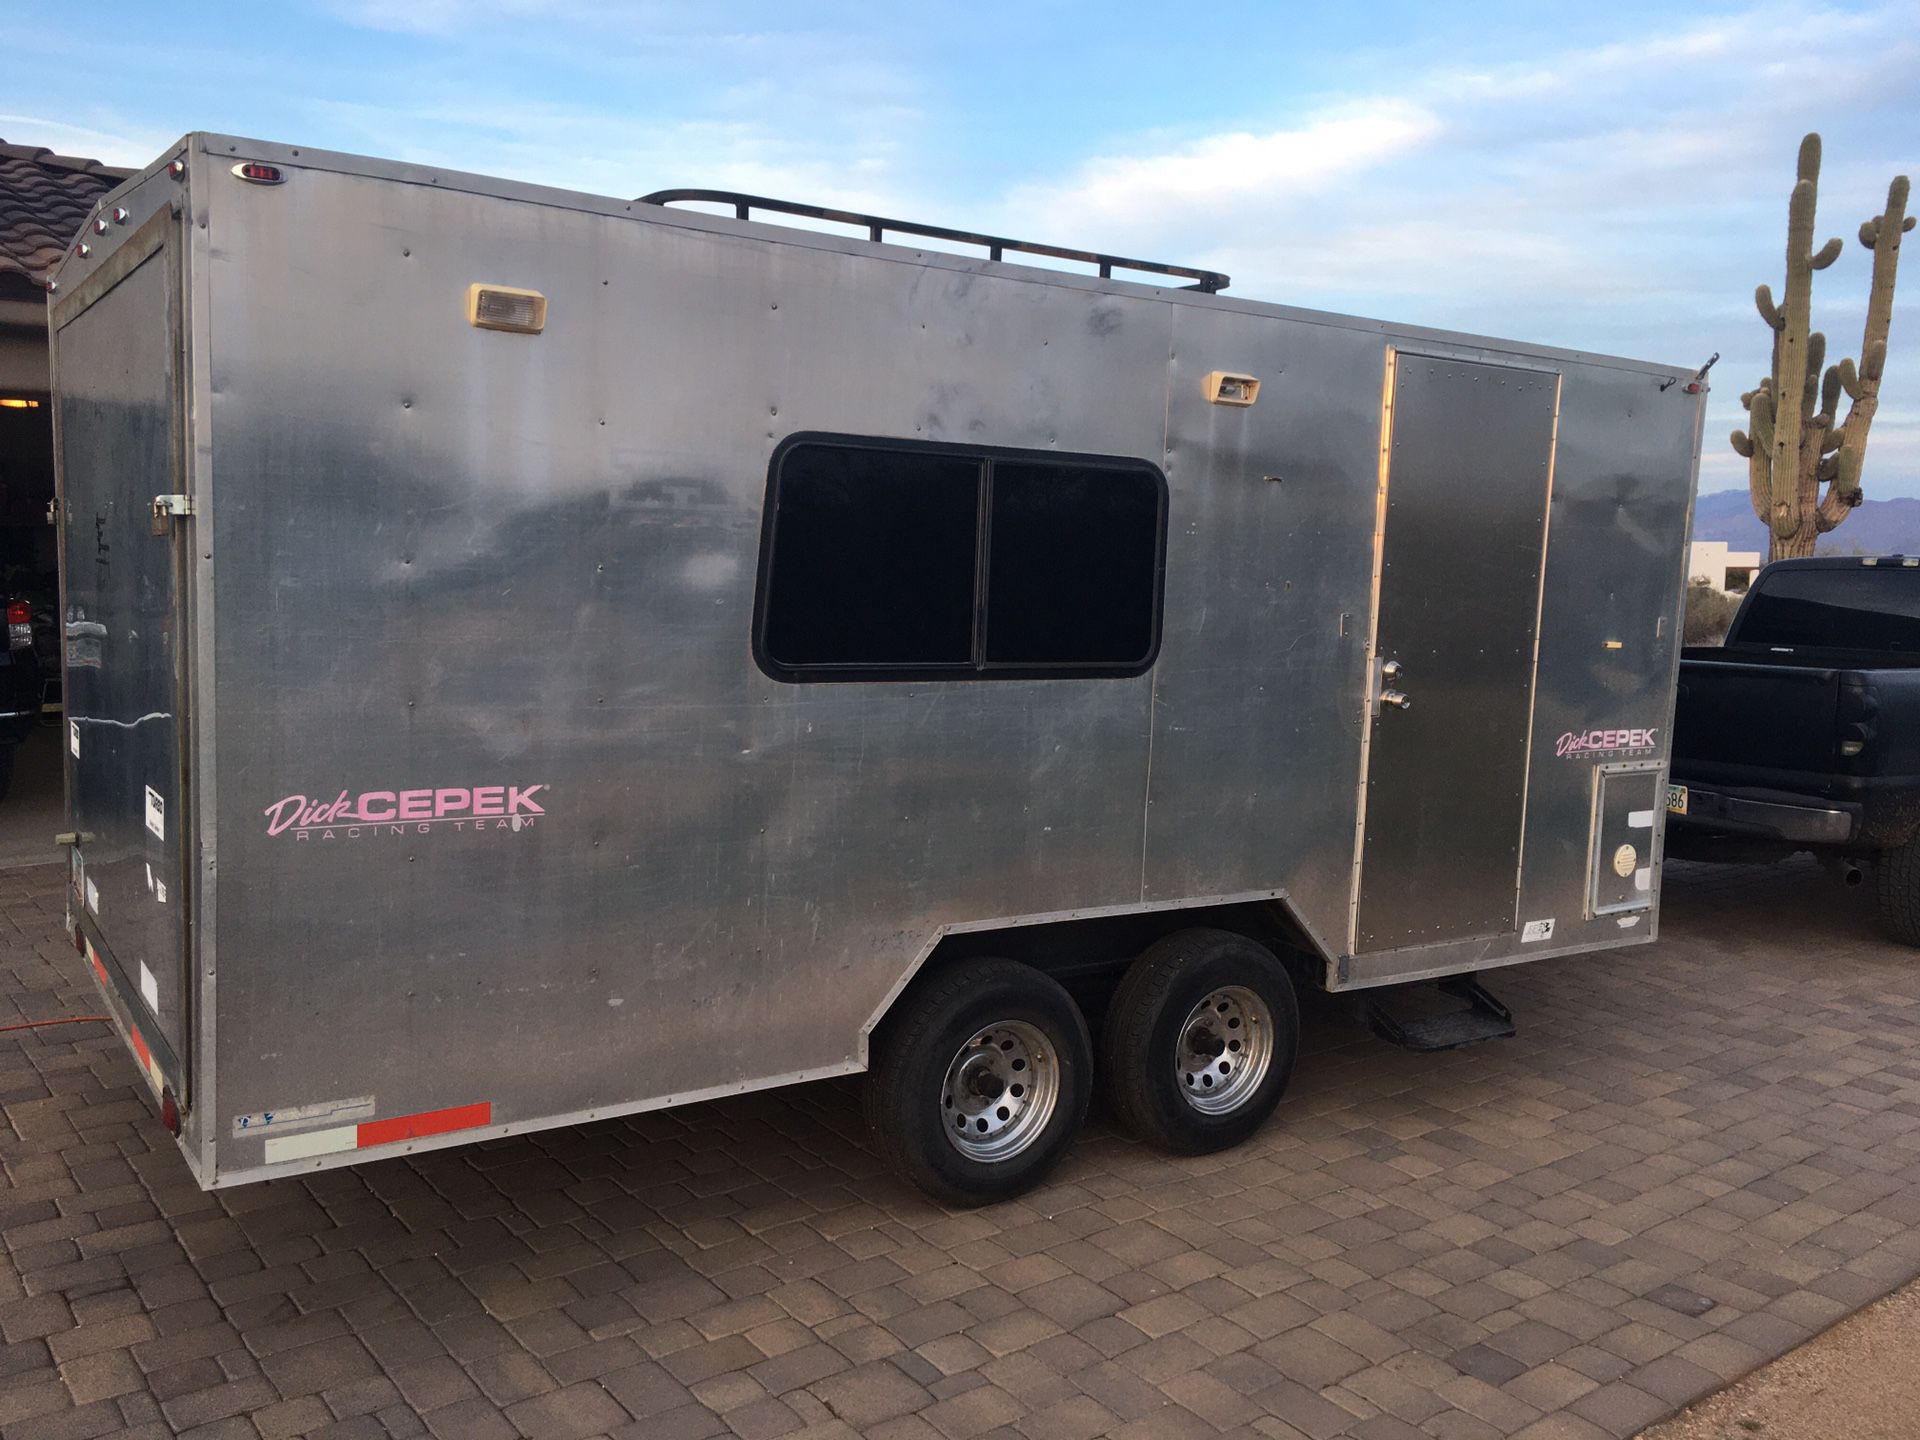 Cargo box toy hauler camping trailer